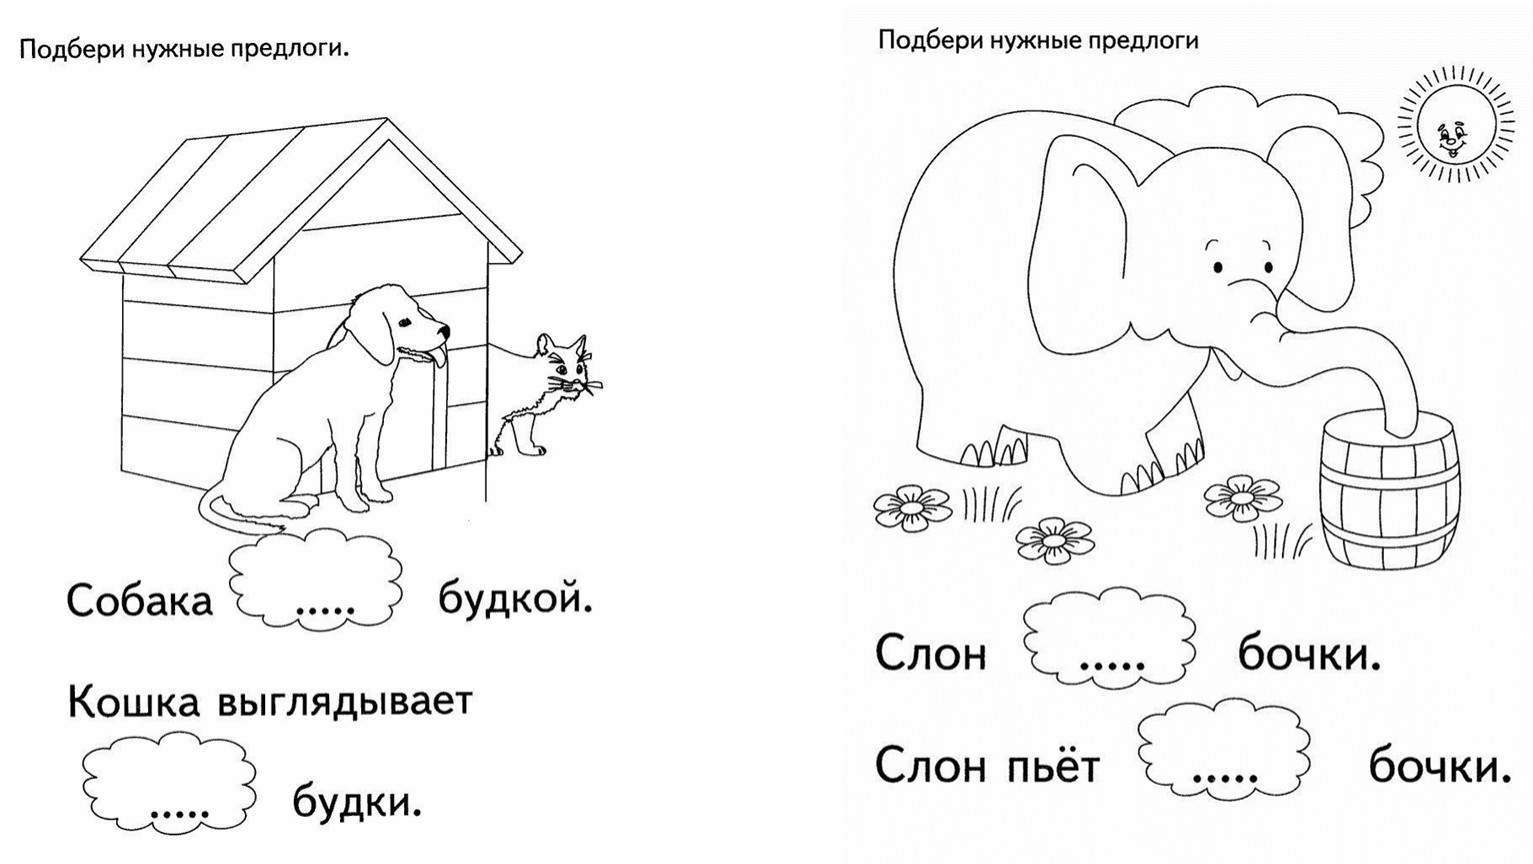 предлоги в русском языке картинки